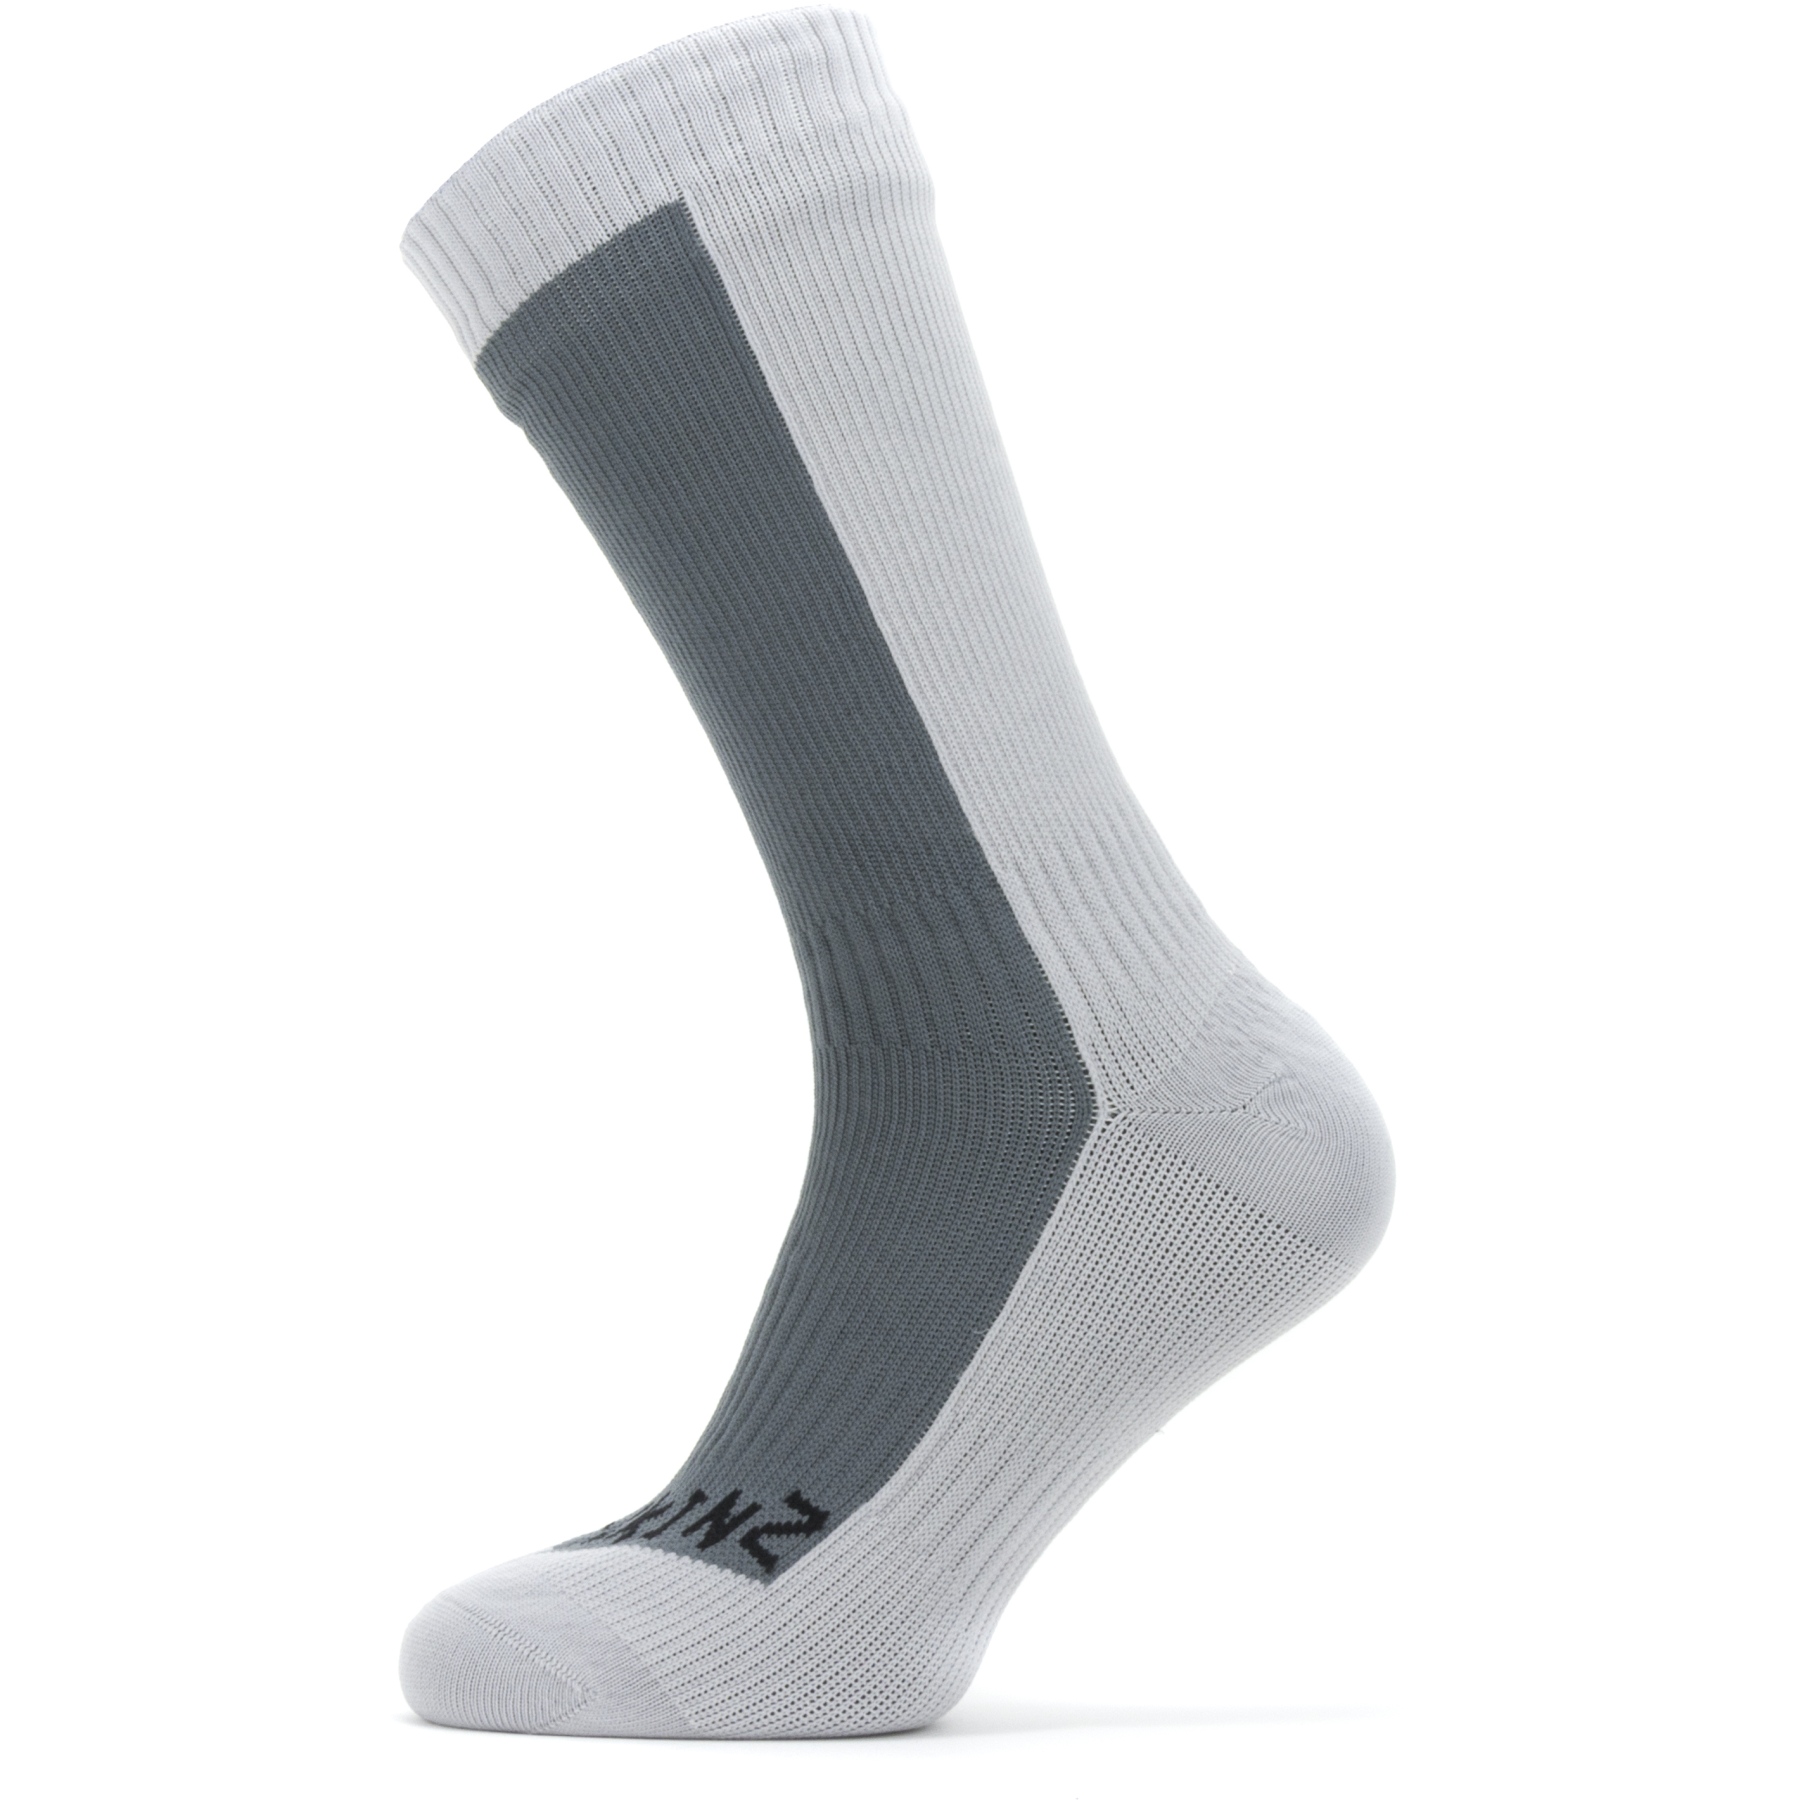 Produktbild von SealSkinz Starston Wasserdichte, mittellange Socken für kaltes Wetter - Grau